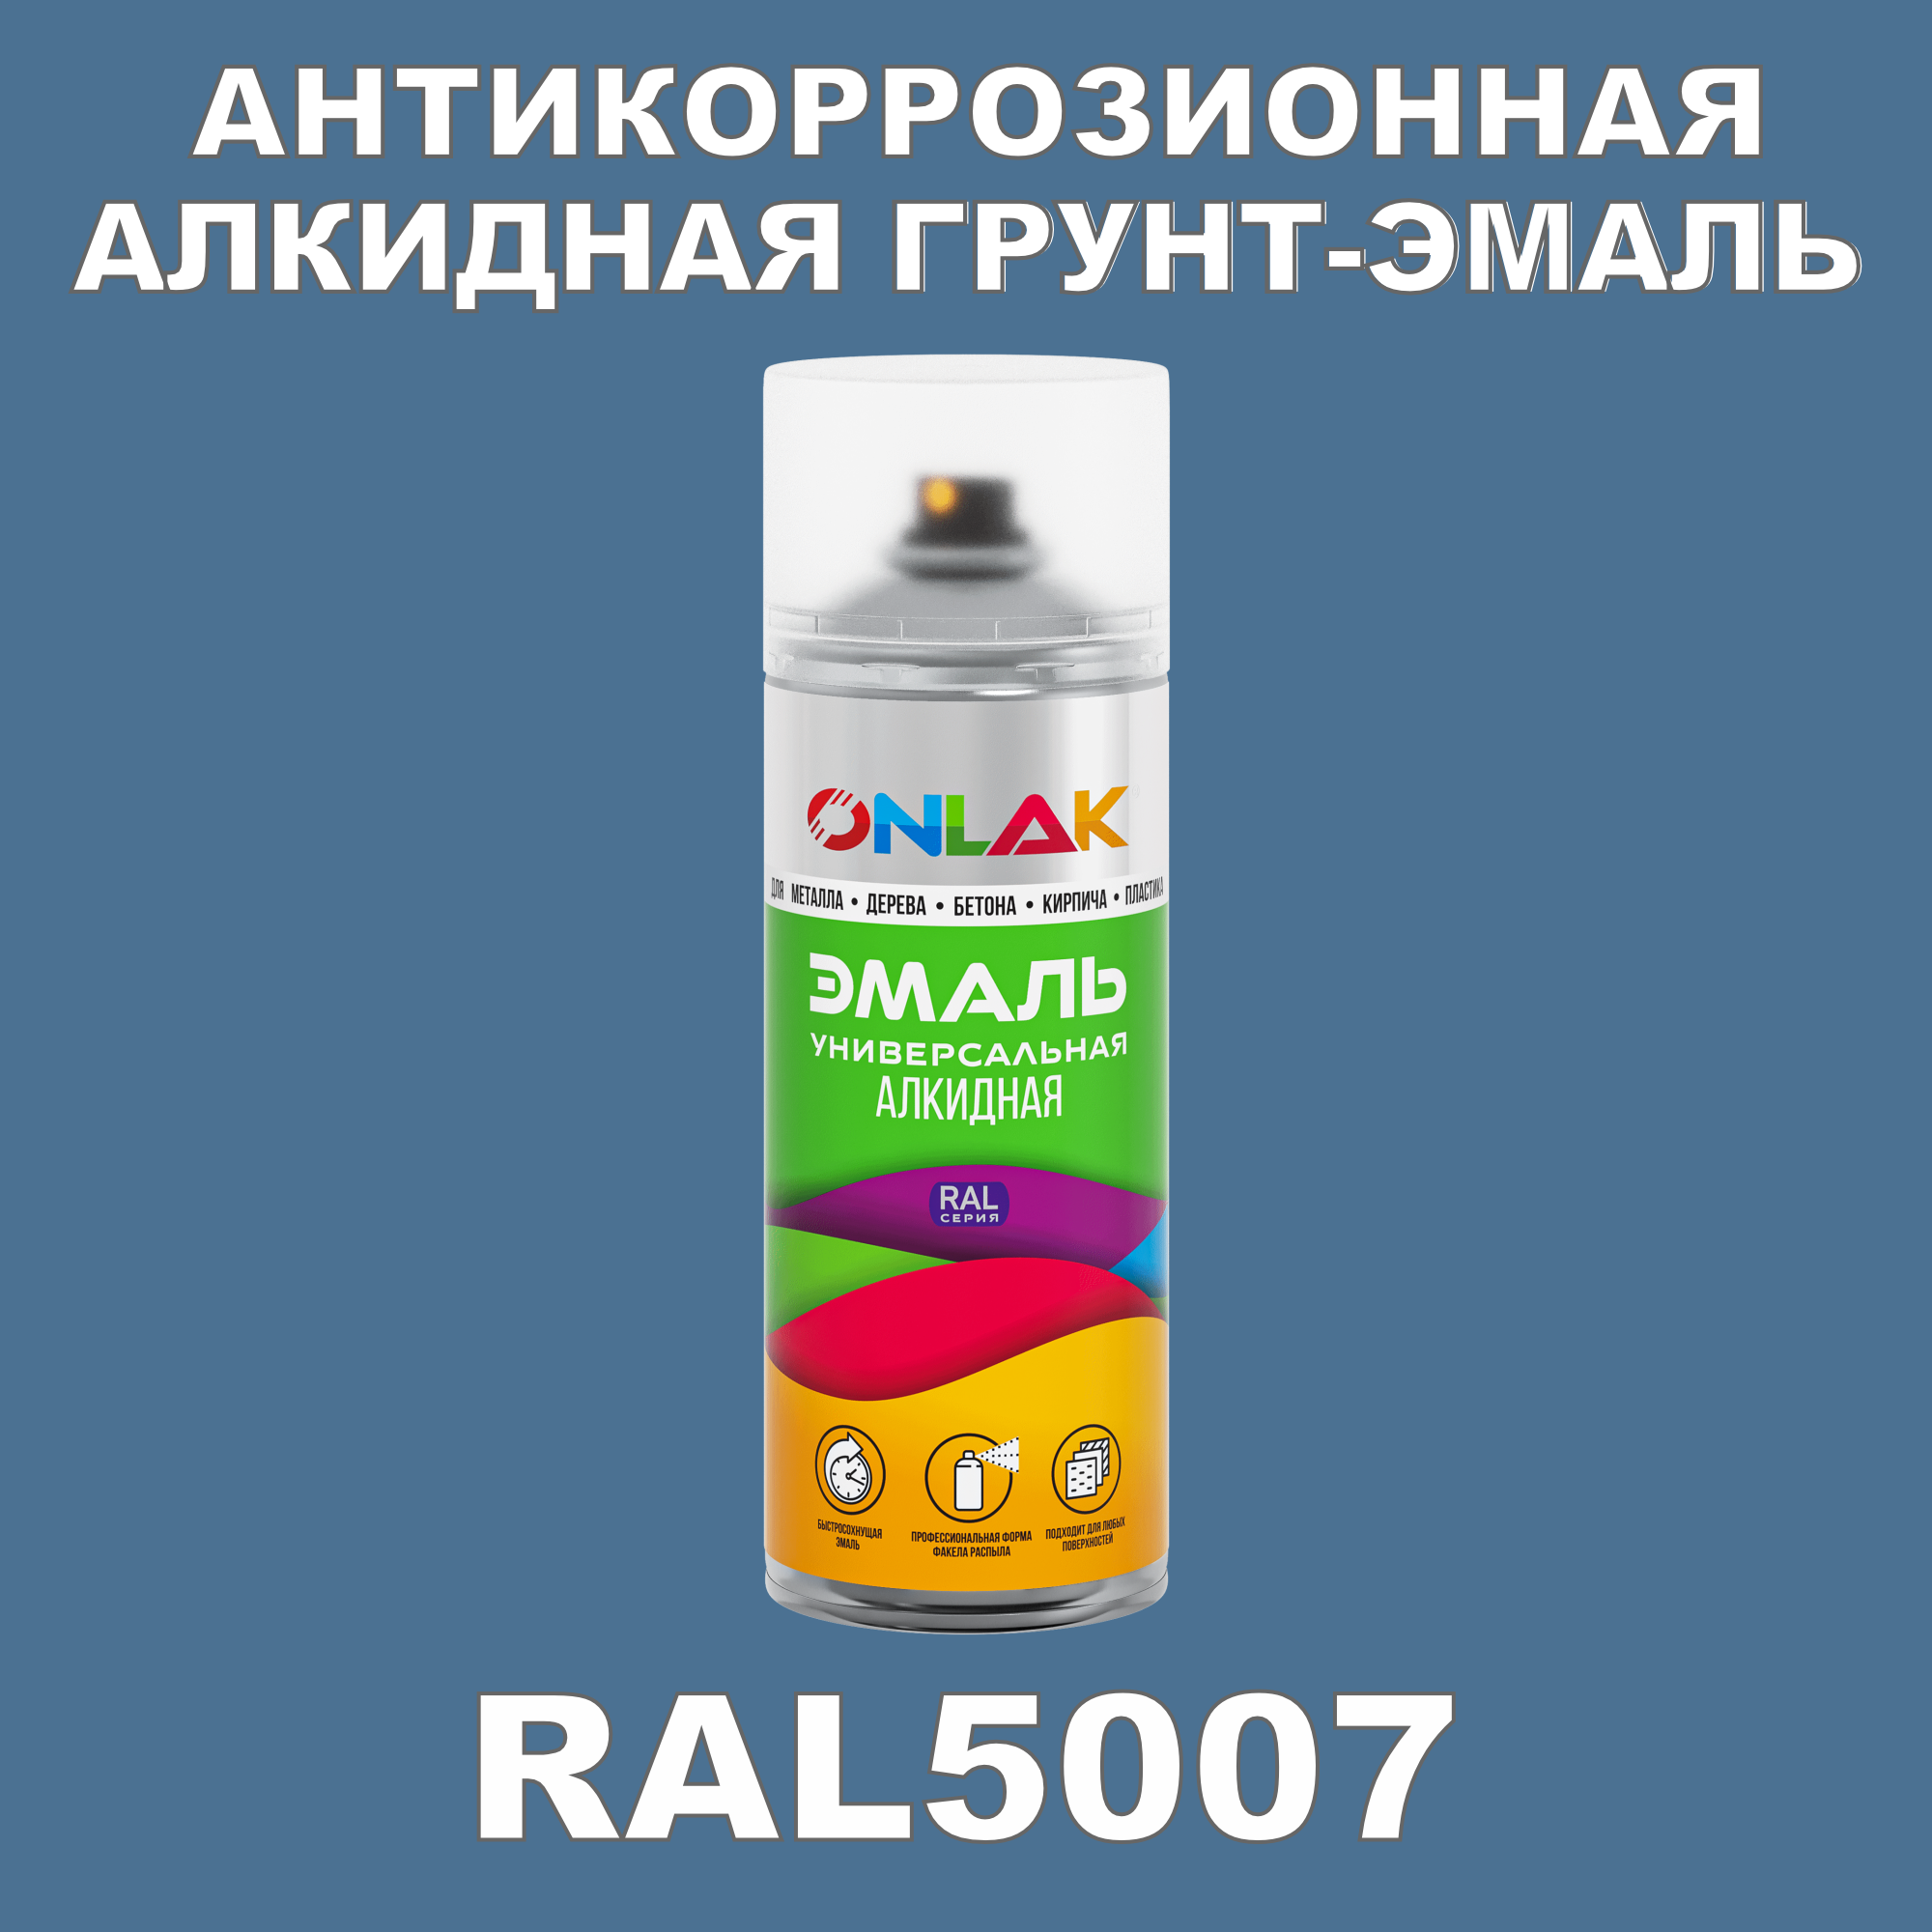 Антикоррозионная грунт-эмаль ONLAK RAL5007 полуматовая для металла и защиты от ржавчины